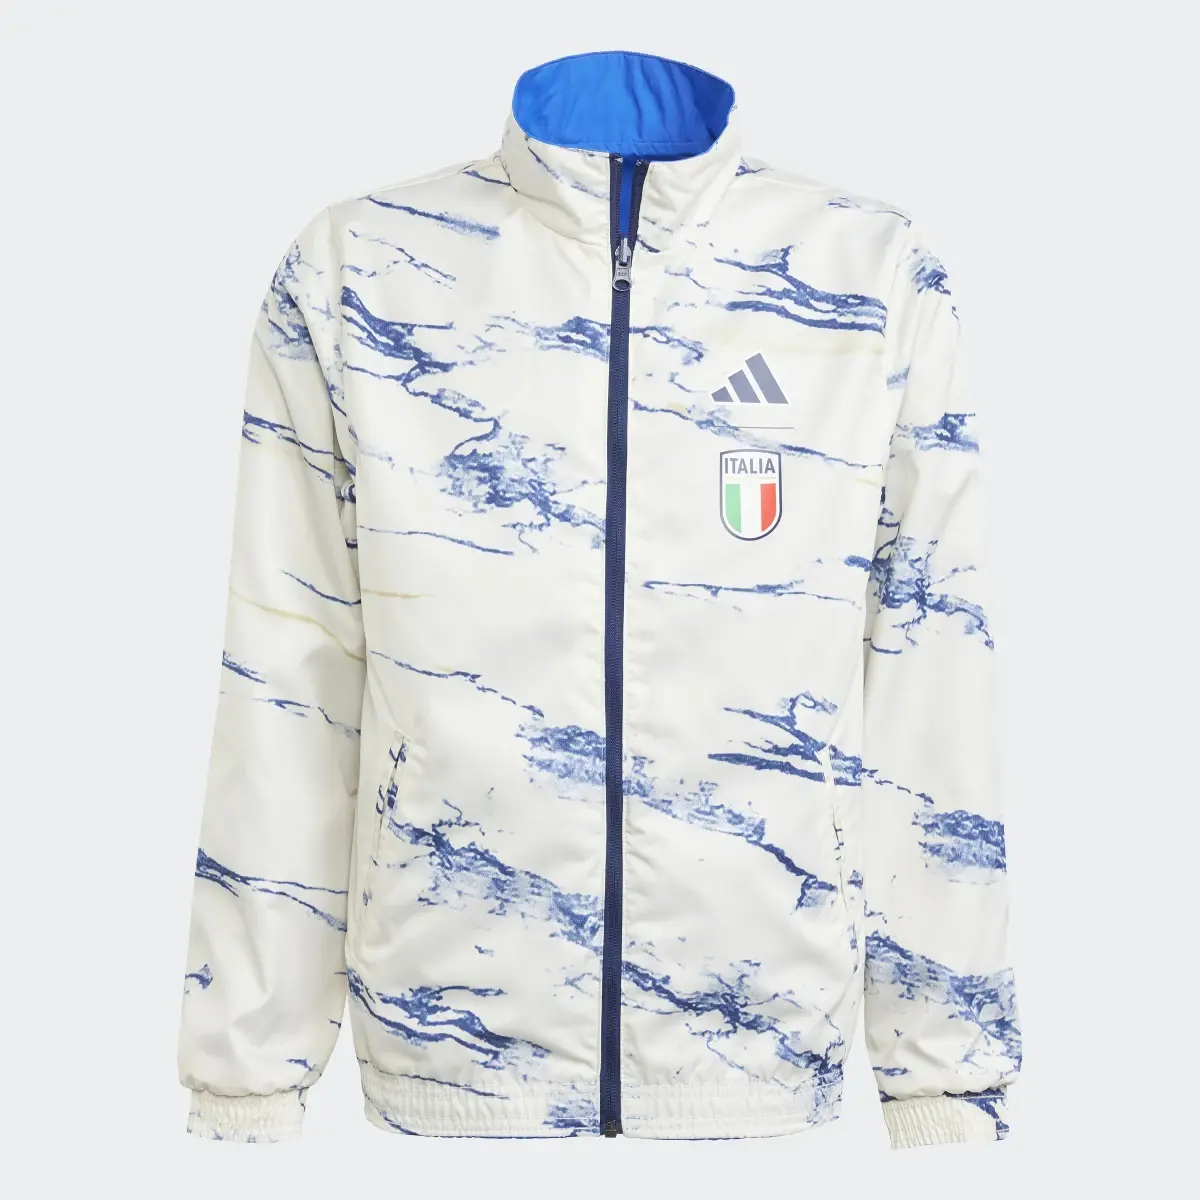 Adidas Italy Anthem Jacket. 1